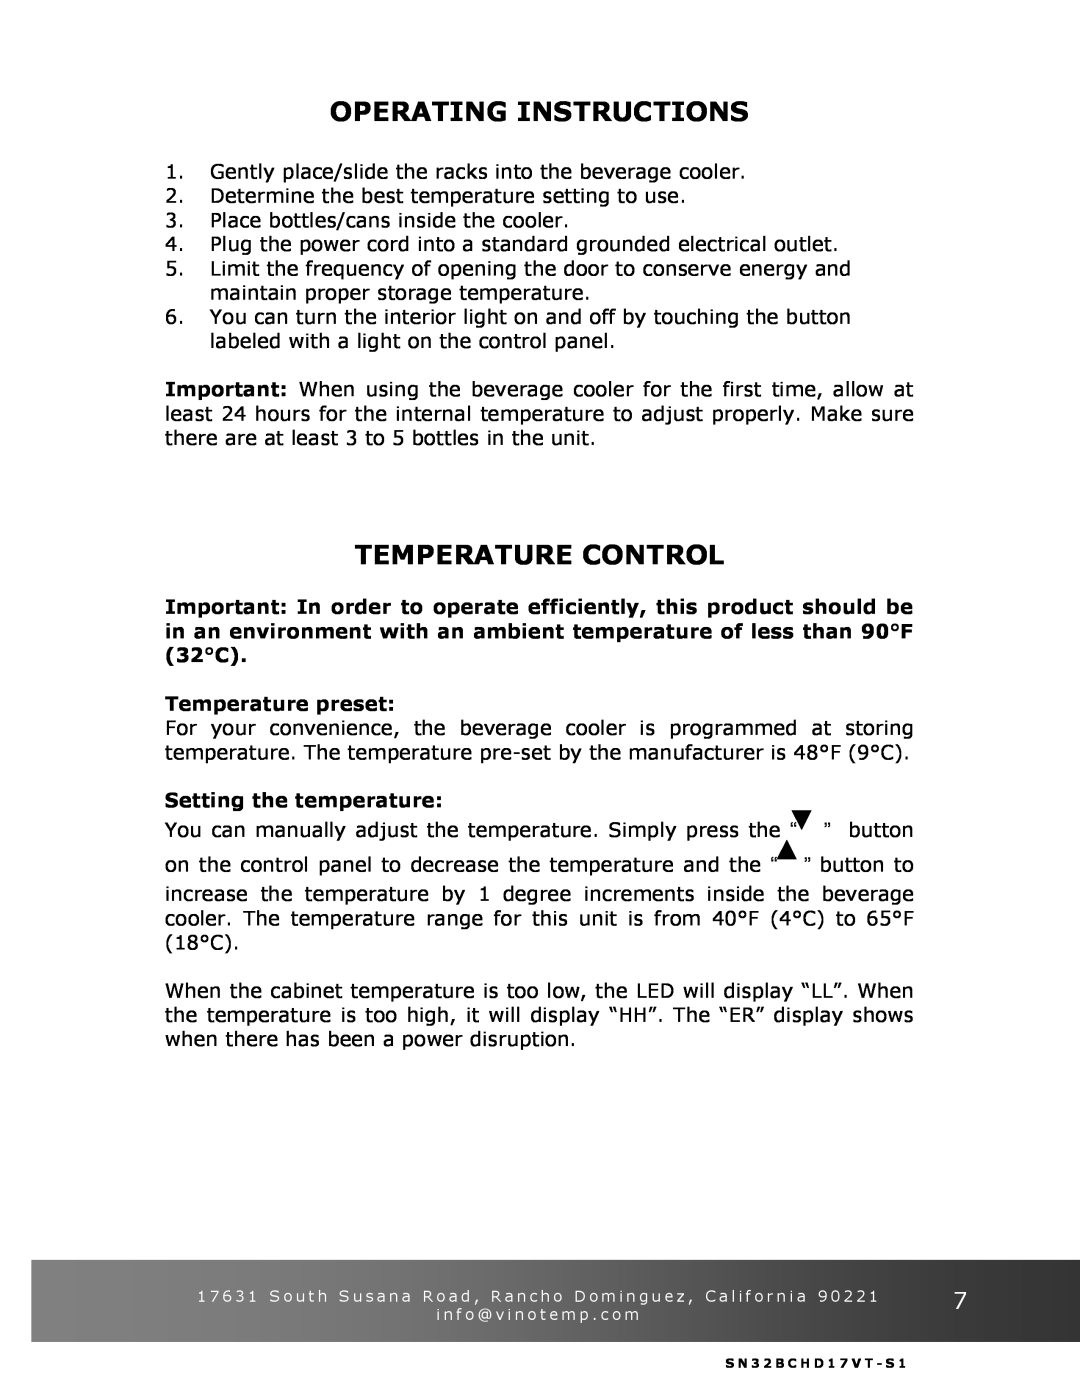 Vinotemp VT-32BCSB manual Operating Instructions, Temperature Control, Temperature preset, Setting the temperature 